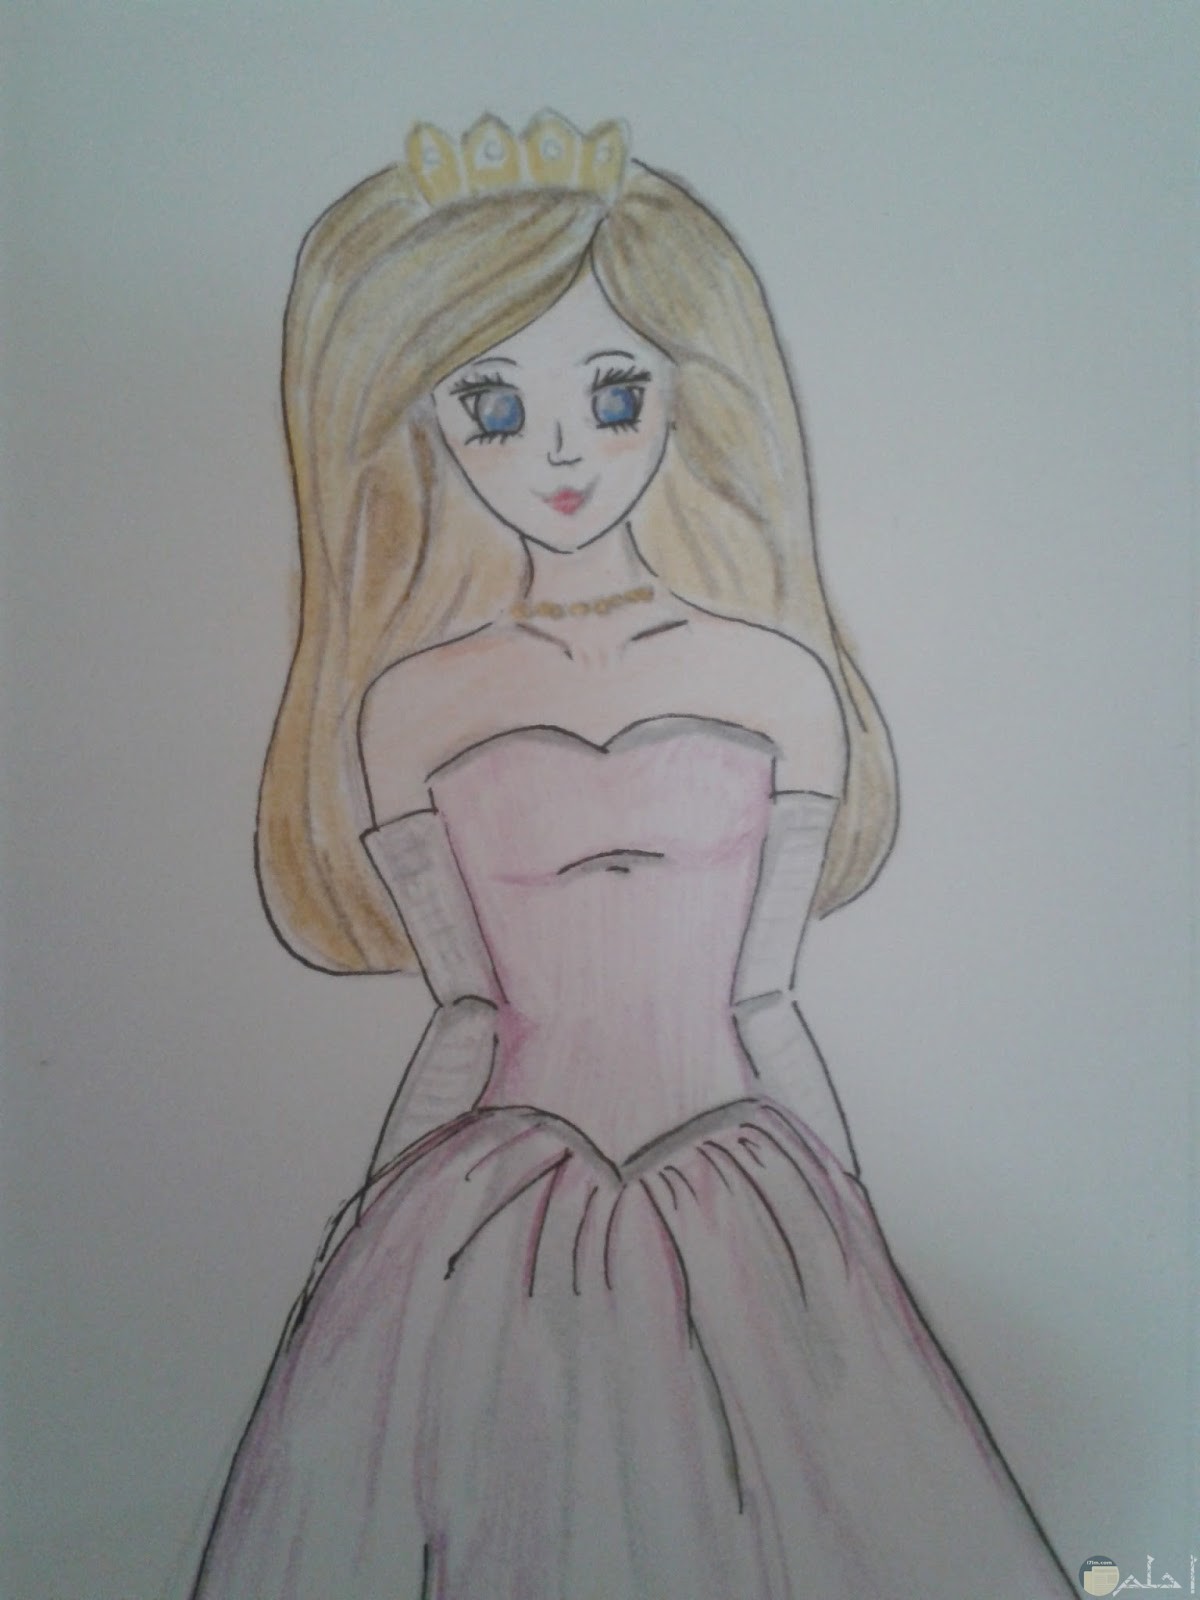 رسمة أنمي ملونة لفتاة جميلة ترتدي فستان.